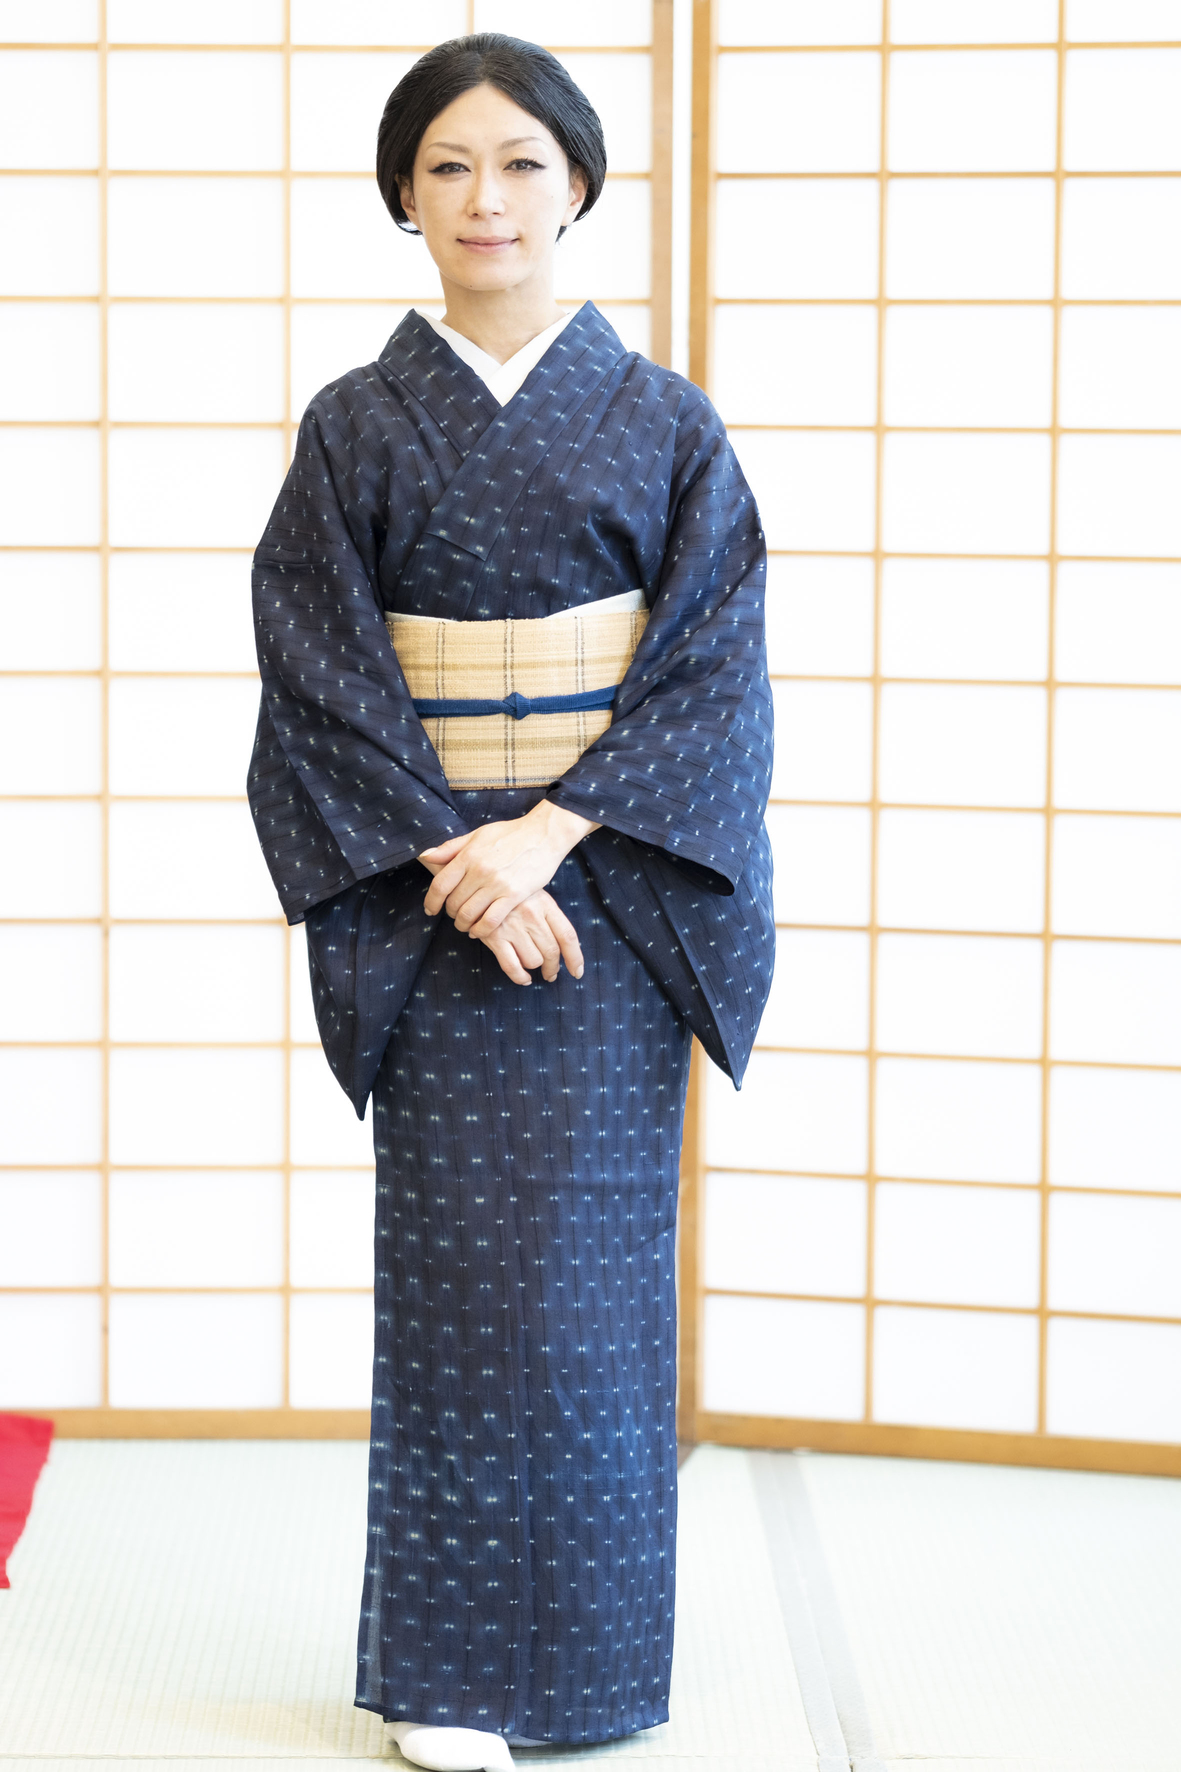 着付けポイントレッスン「みずのしのぶの秘密の小技」 日本最大級